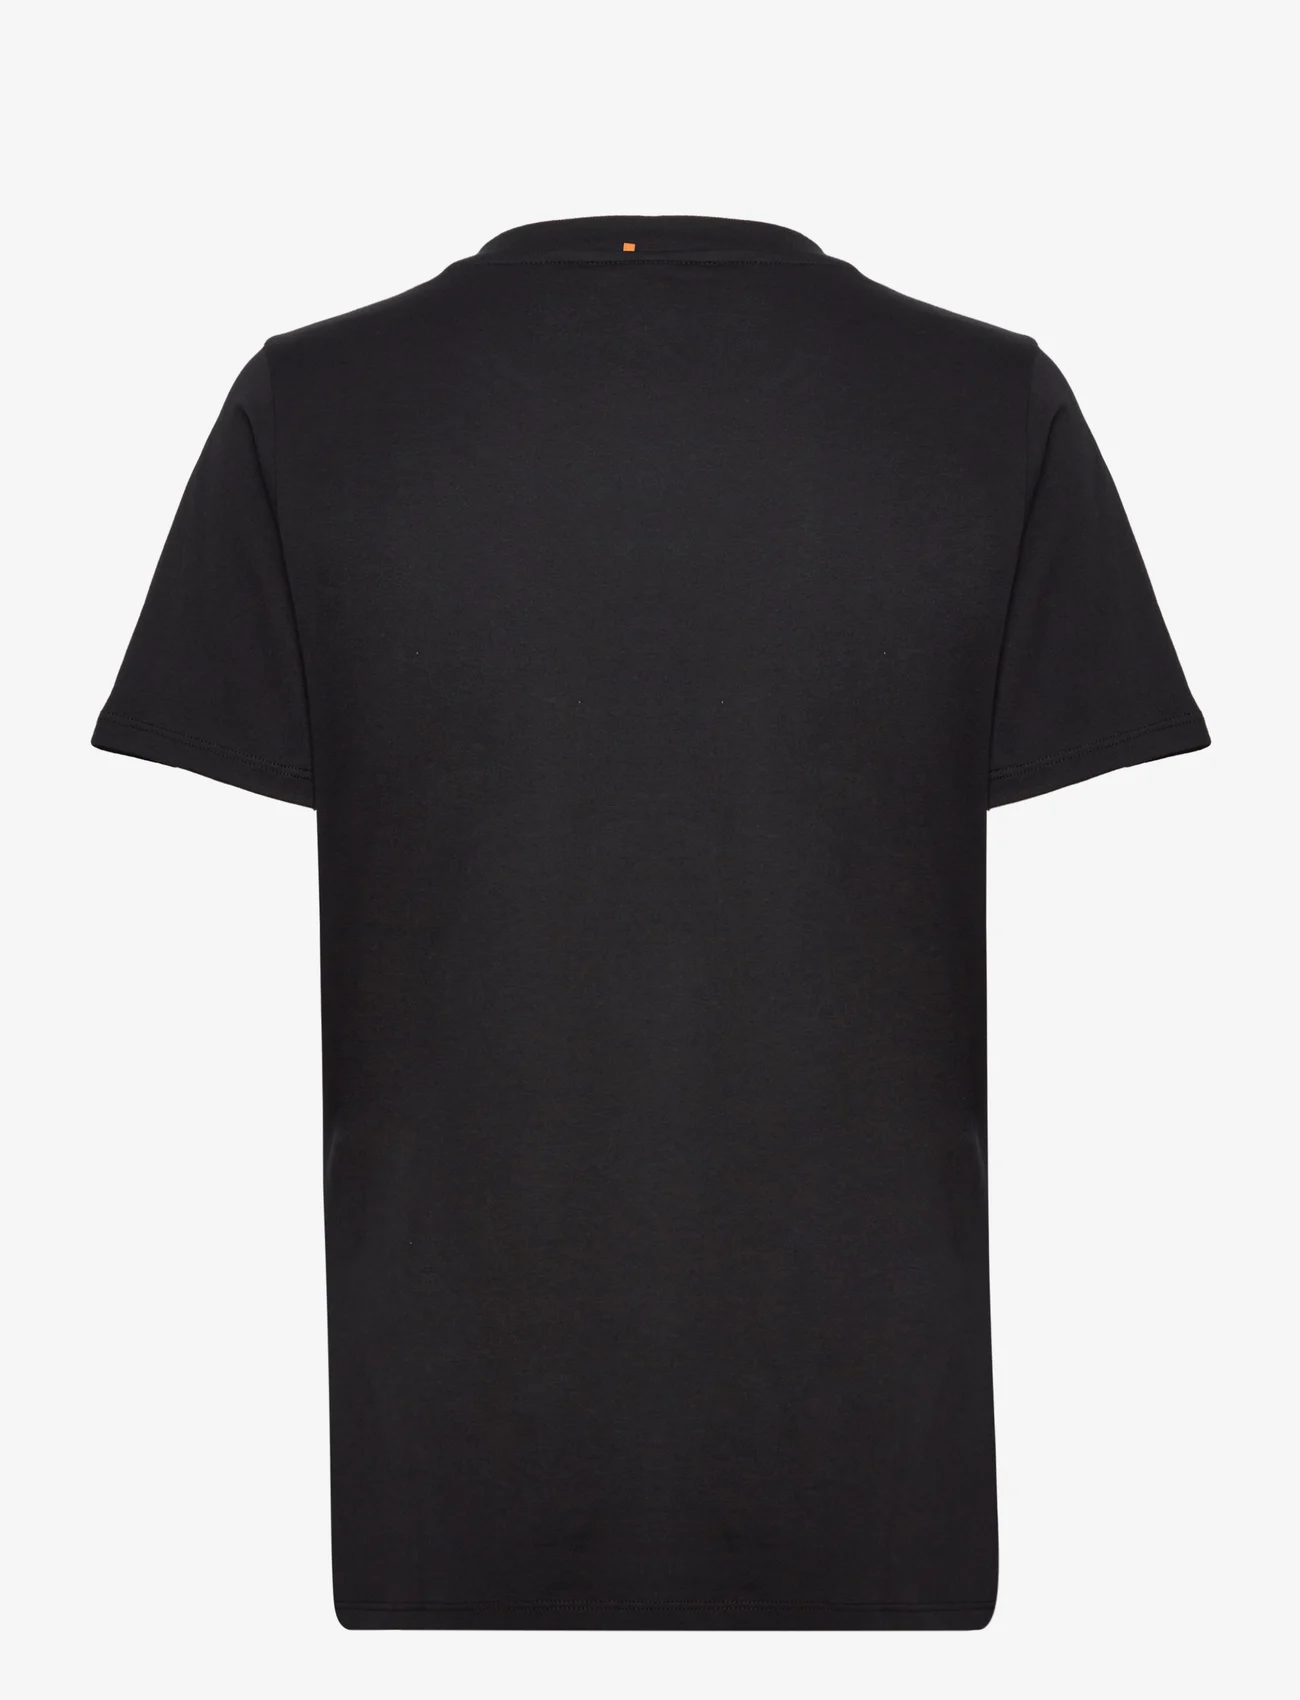 BOSS - C_Elogo_5 - t-skjorter - black - 1